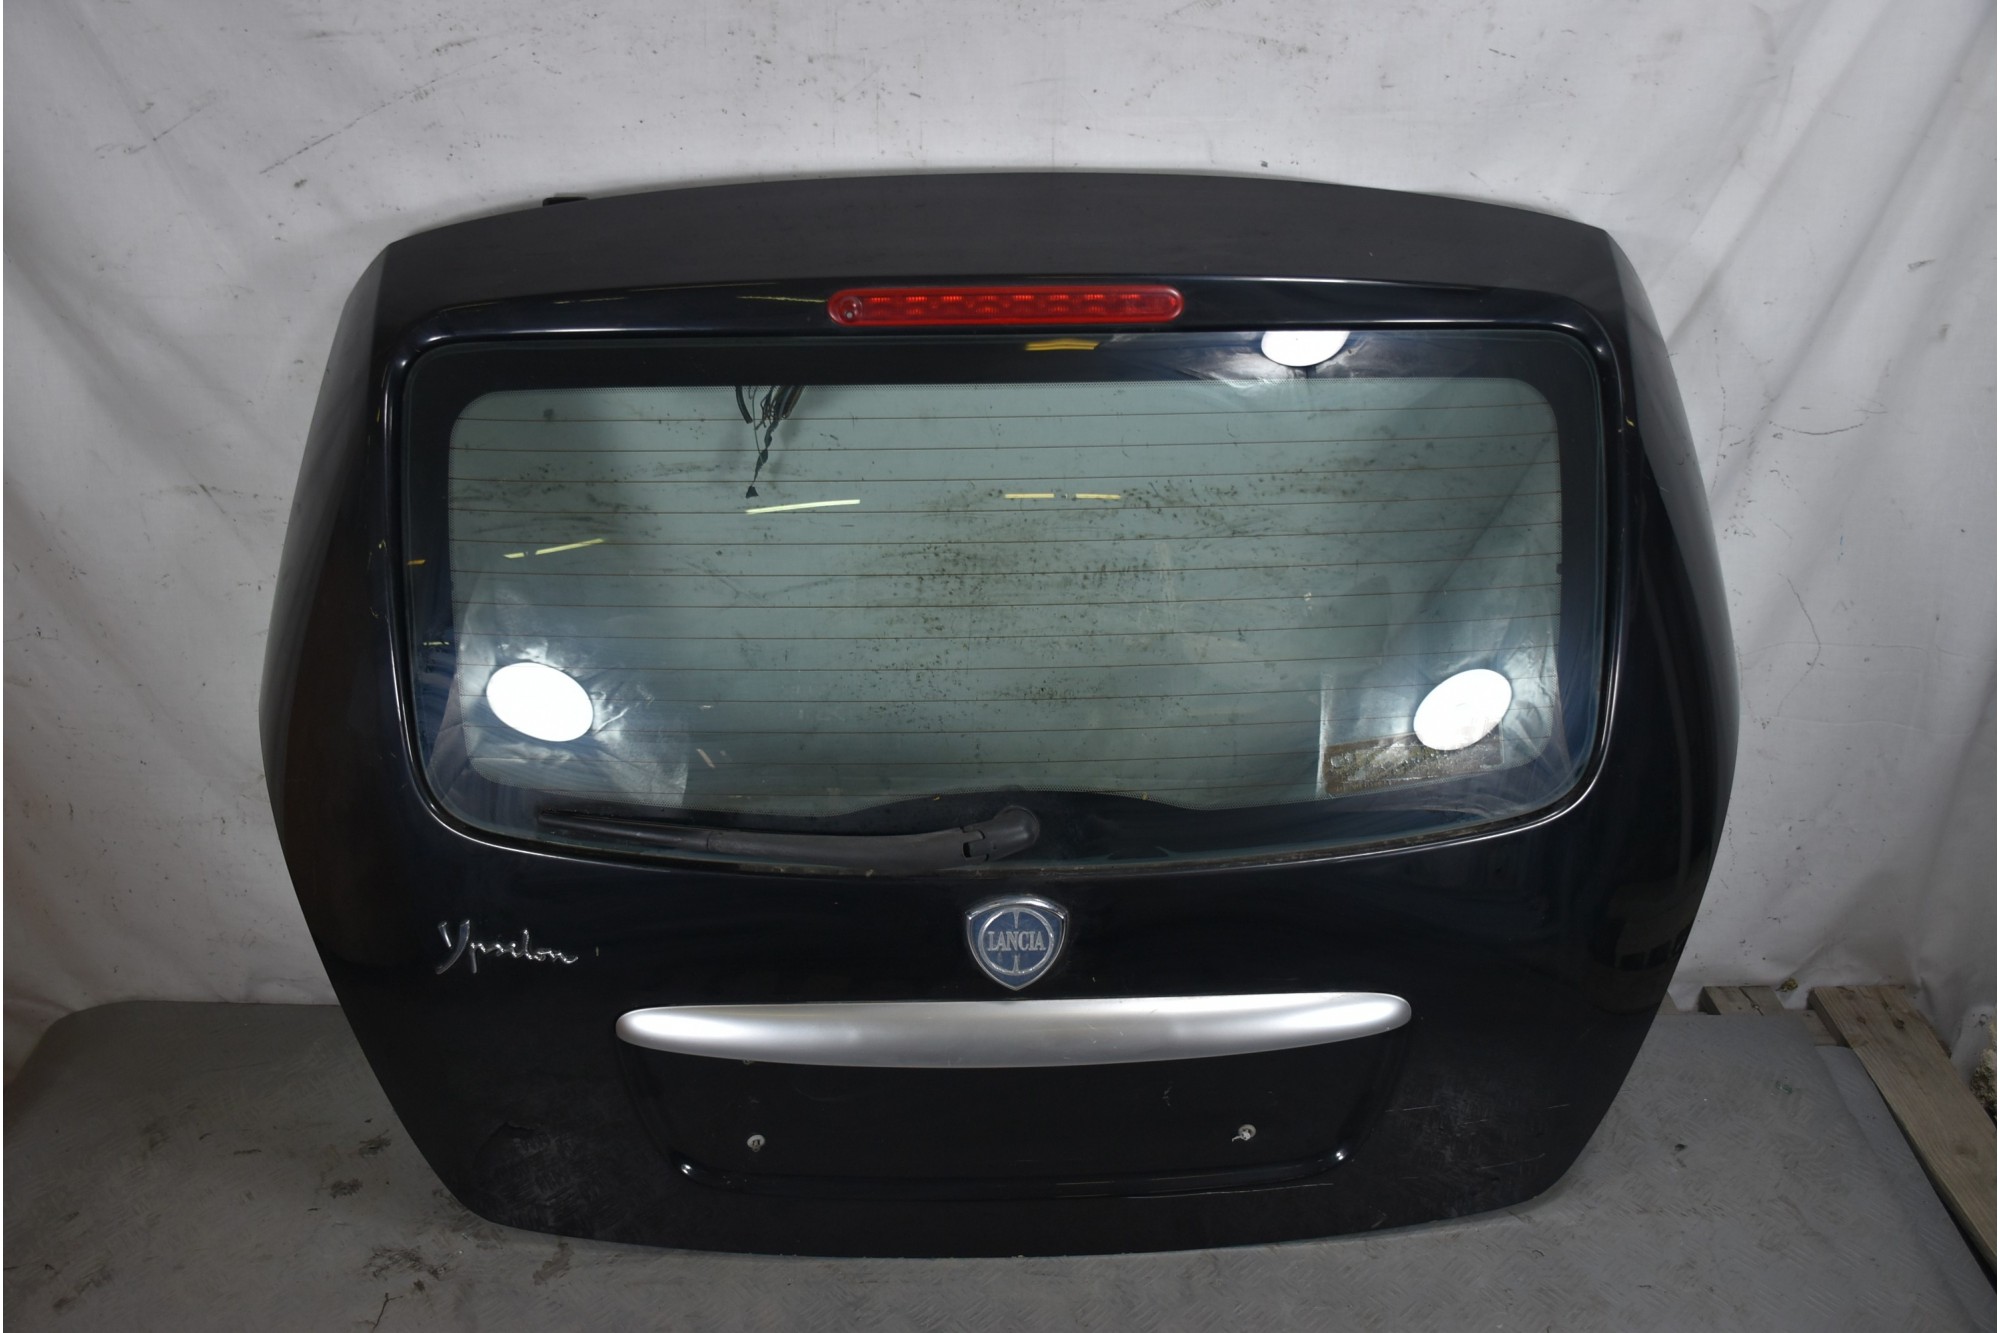 Portellone bagagliaio posteriore Lancia Ypsilon Dal 2003 al 2011 Cod colore 601  1634544299522